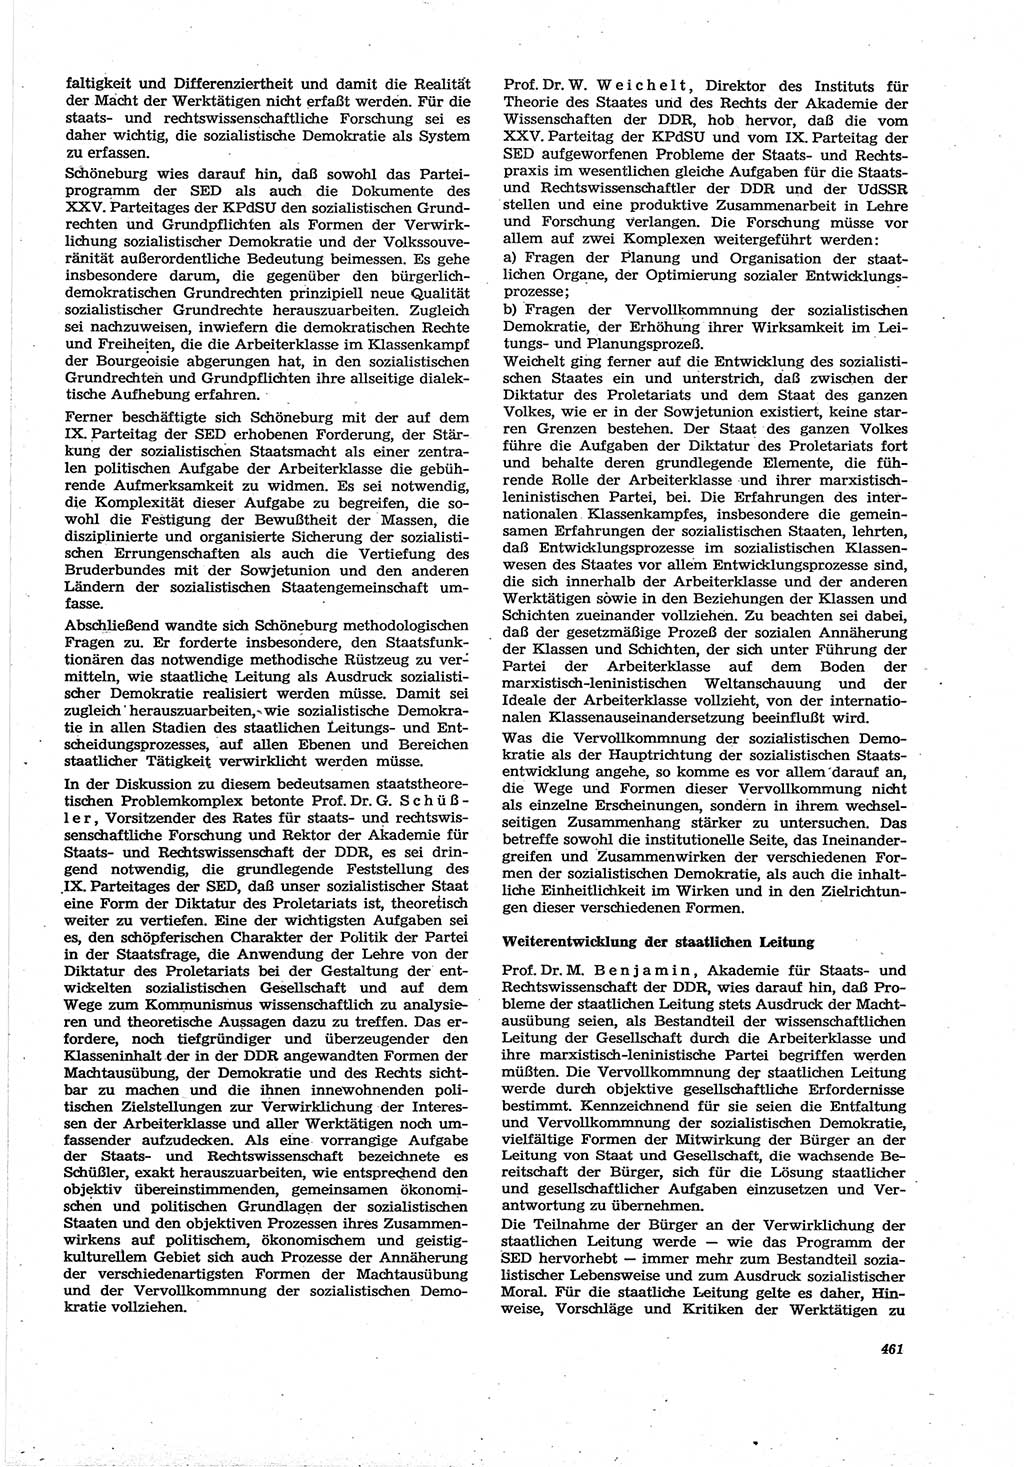 Neue Justiz (NJ), Zeitschrift für Recht und Rechtswissenschaft [Deutsche Demokratische Republik (DDR)], 30. Jahrgang 1976, Seite 461 (NJ DDR 1976, S. 461)